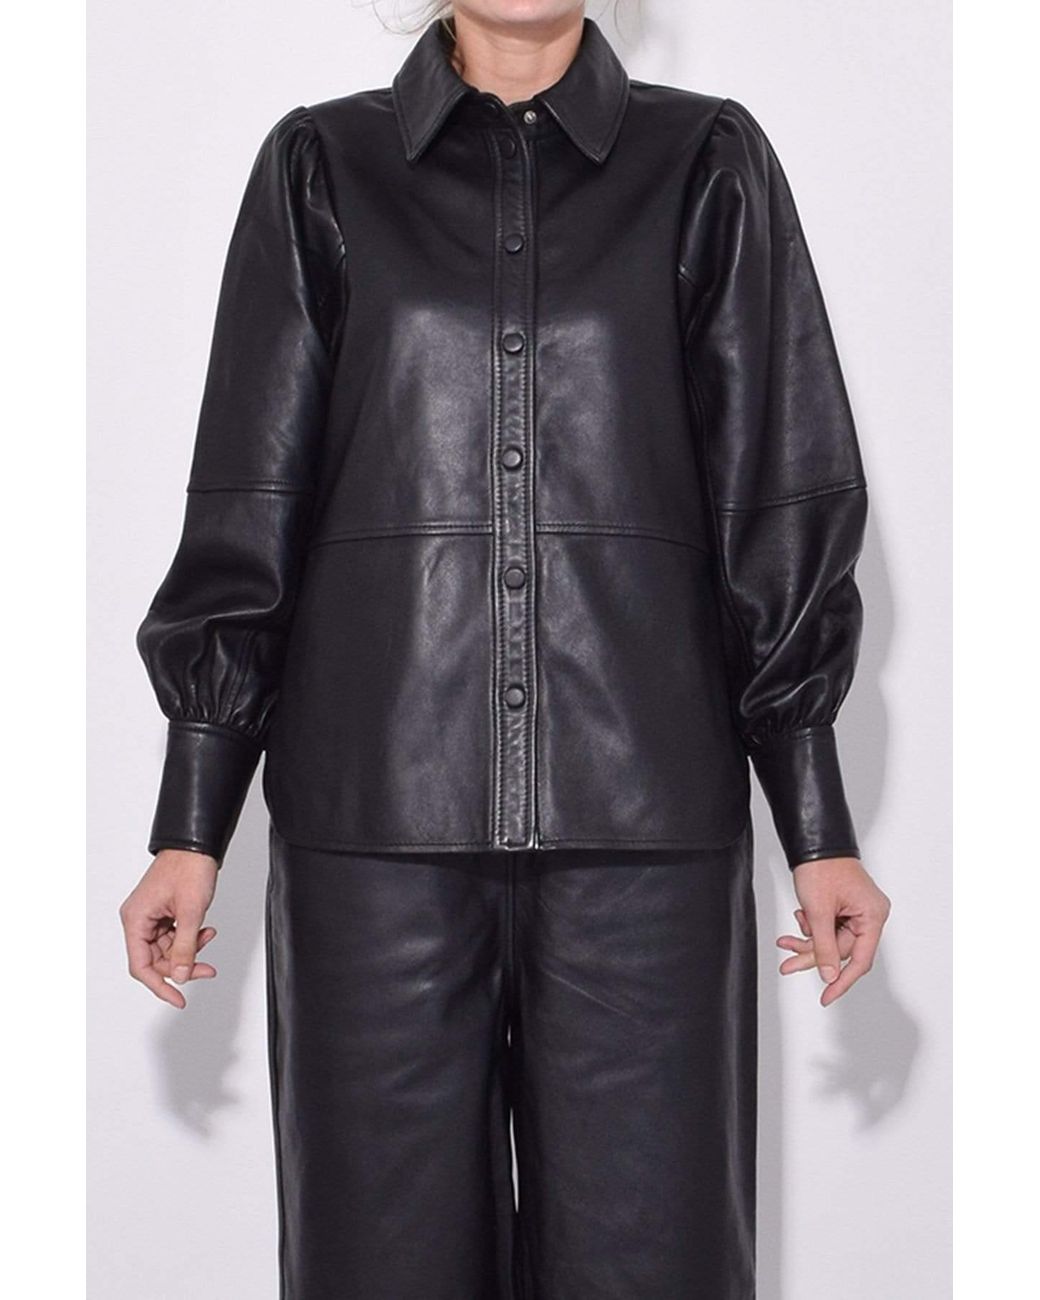 Ganni Lambskin Leather Shirt in Black | Lyst Canada